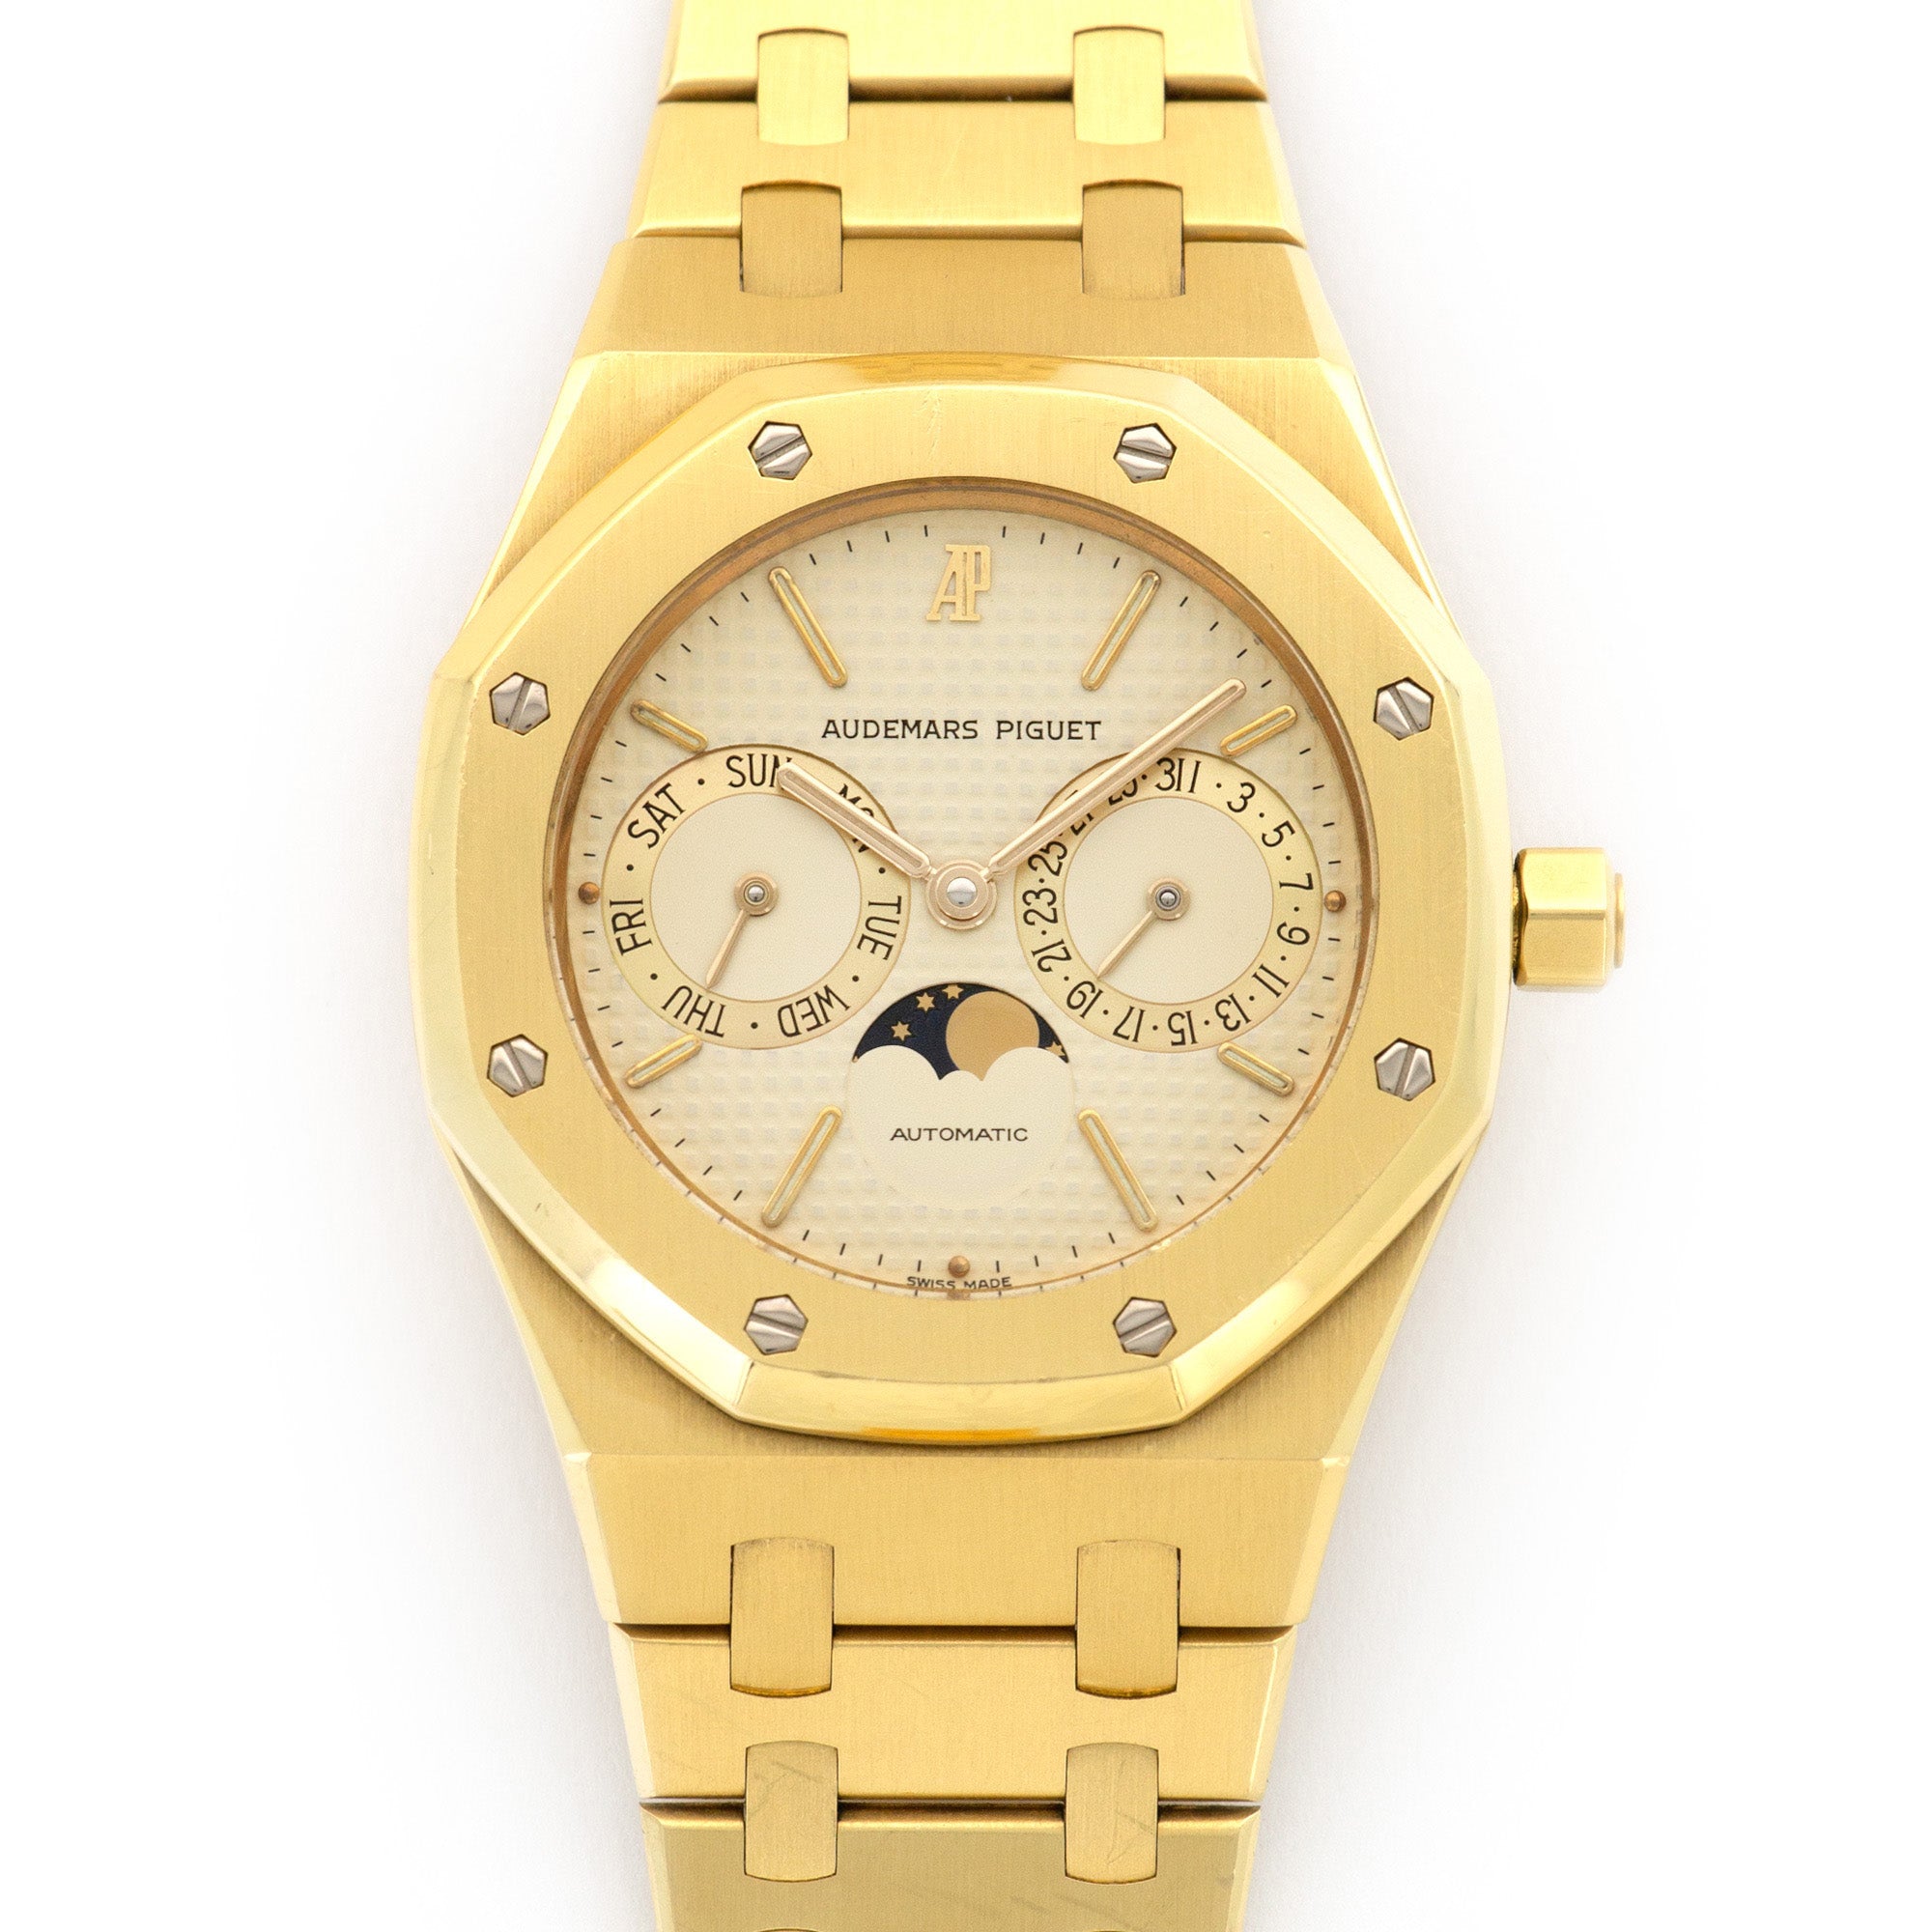 Audemars Piguet - Audemars Piguet Yellow Gold Royal Oak Moonphase Day-Date Watch Ref. 5594 - The Keystone Watches